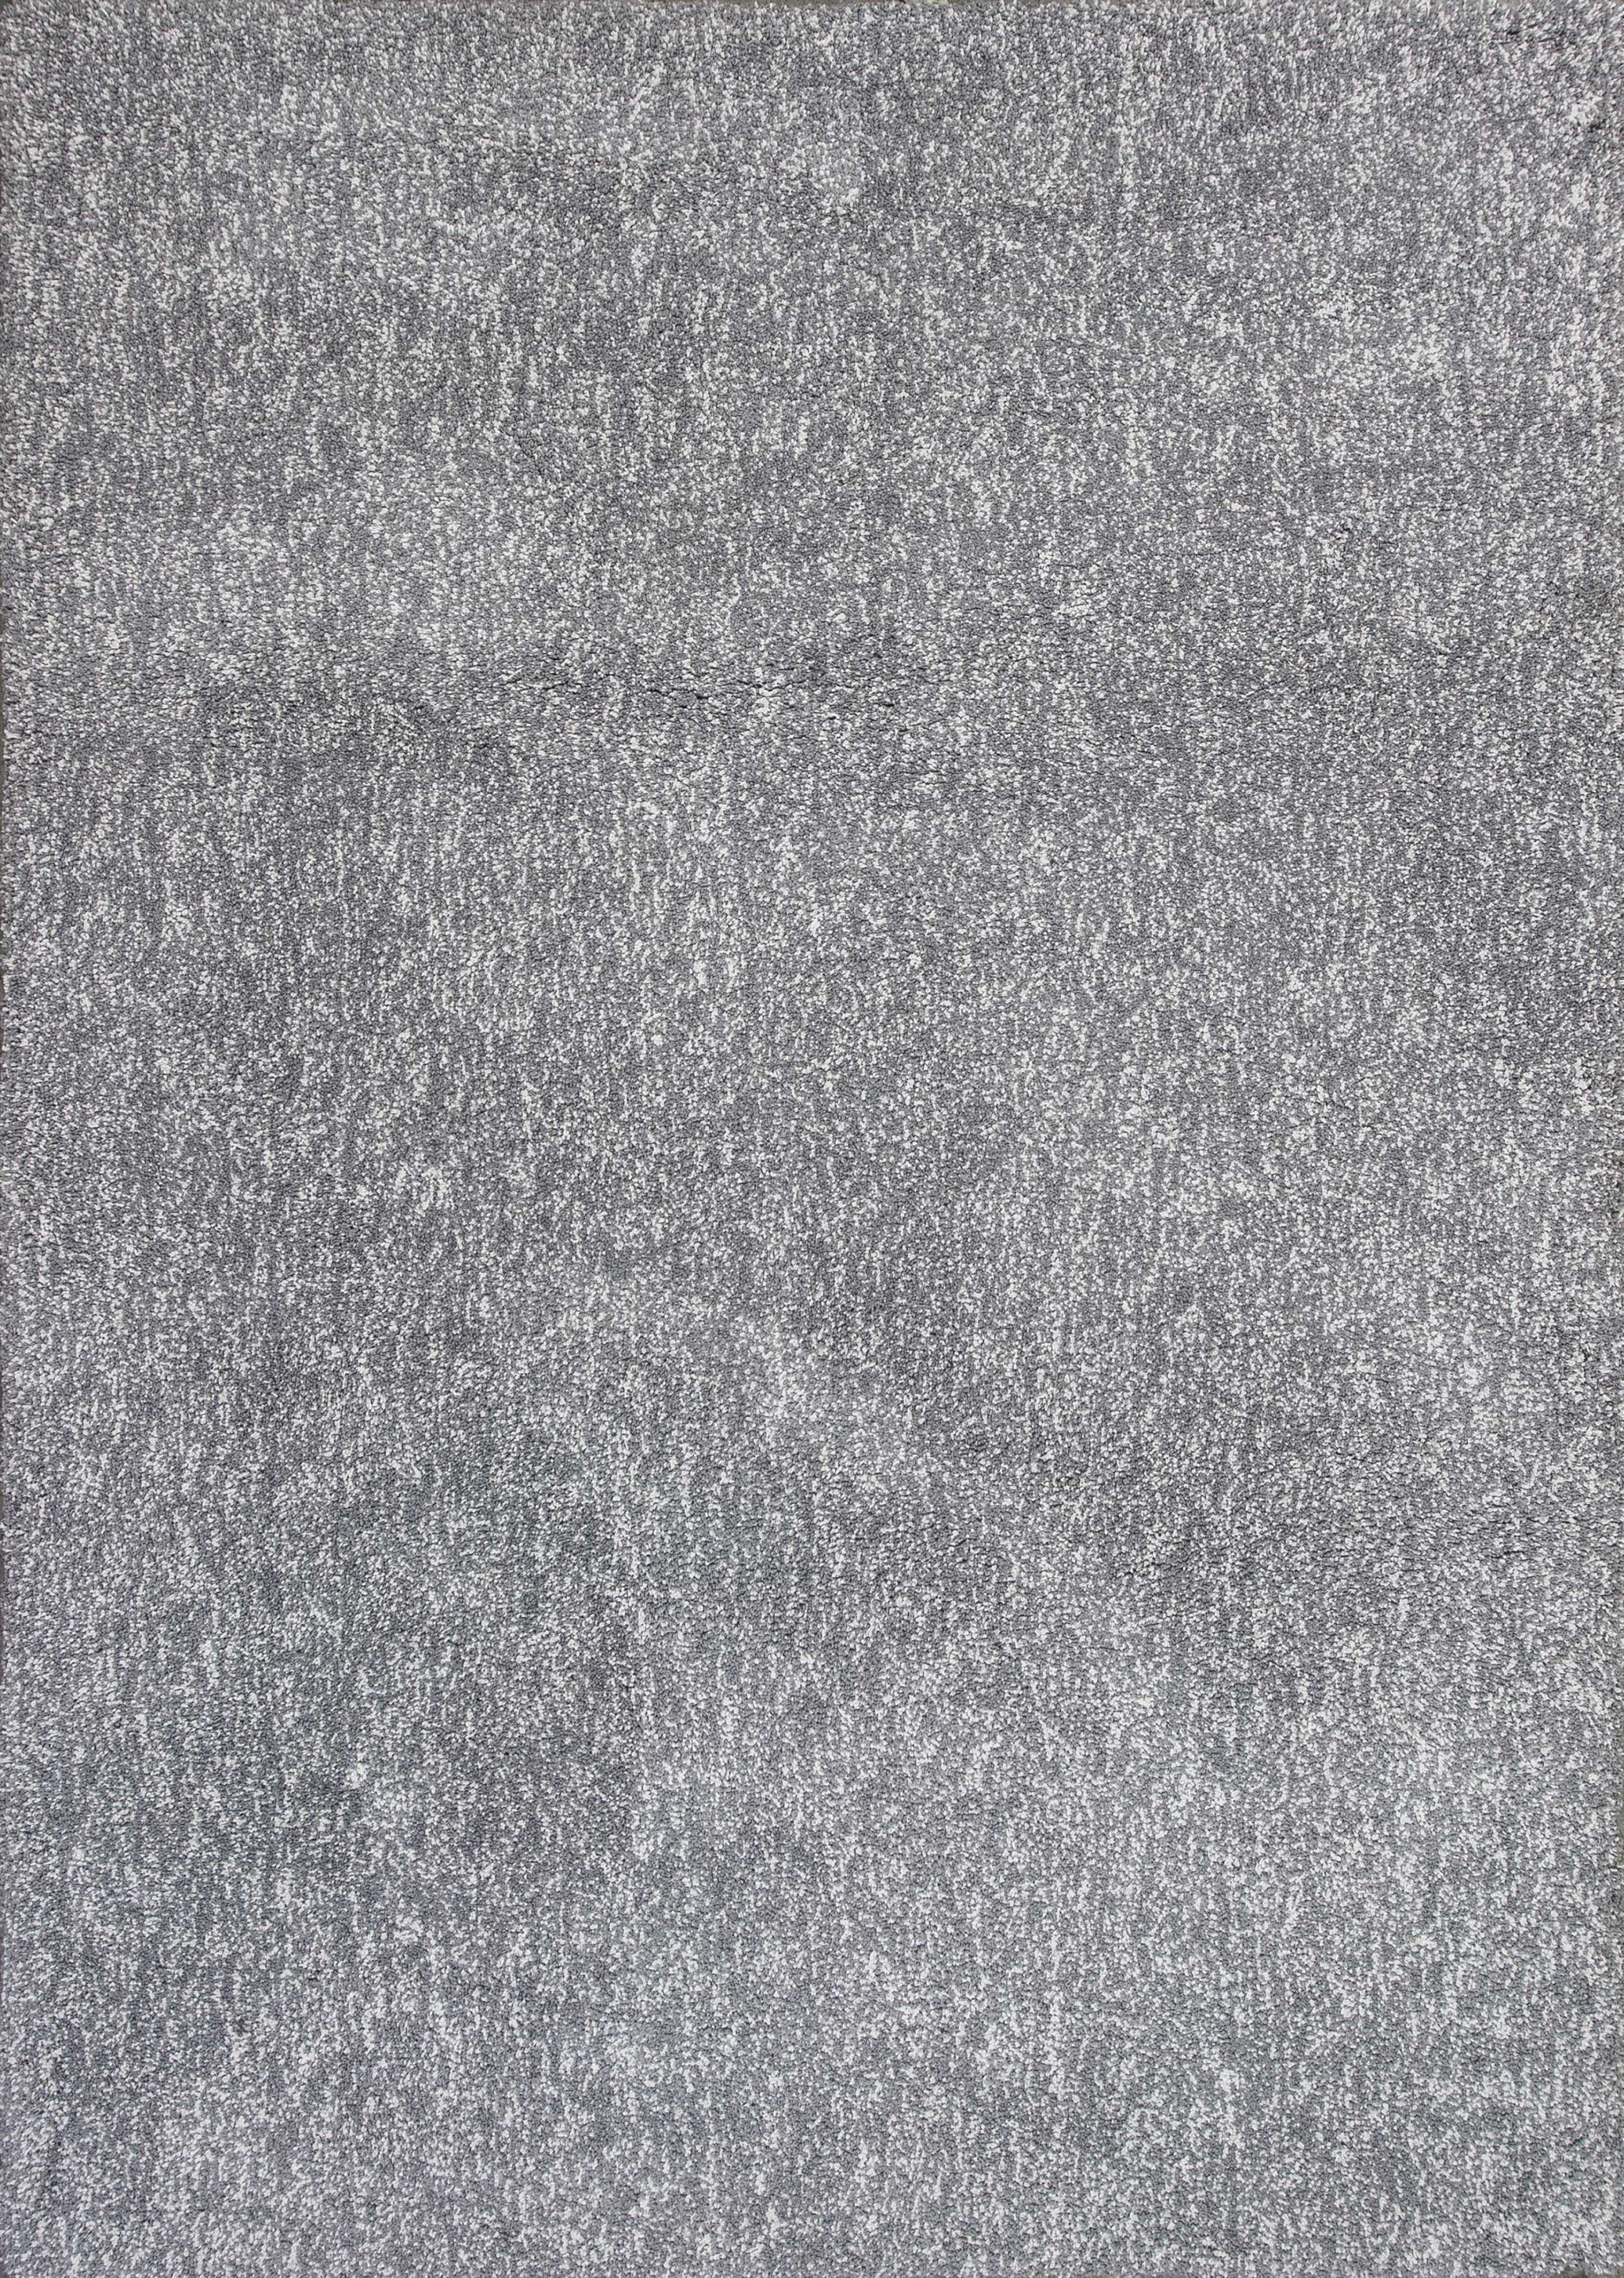 2'X4' Grey Heather Indoor Shag Rug-353414-1